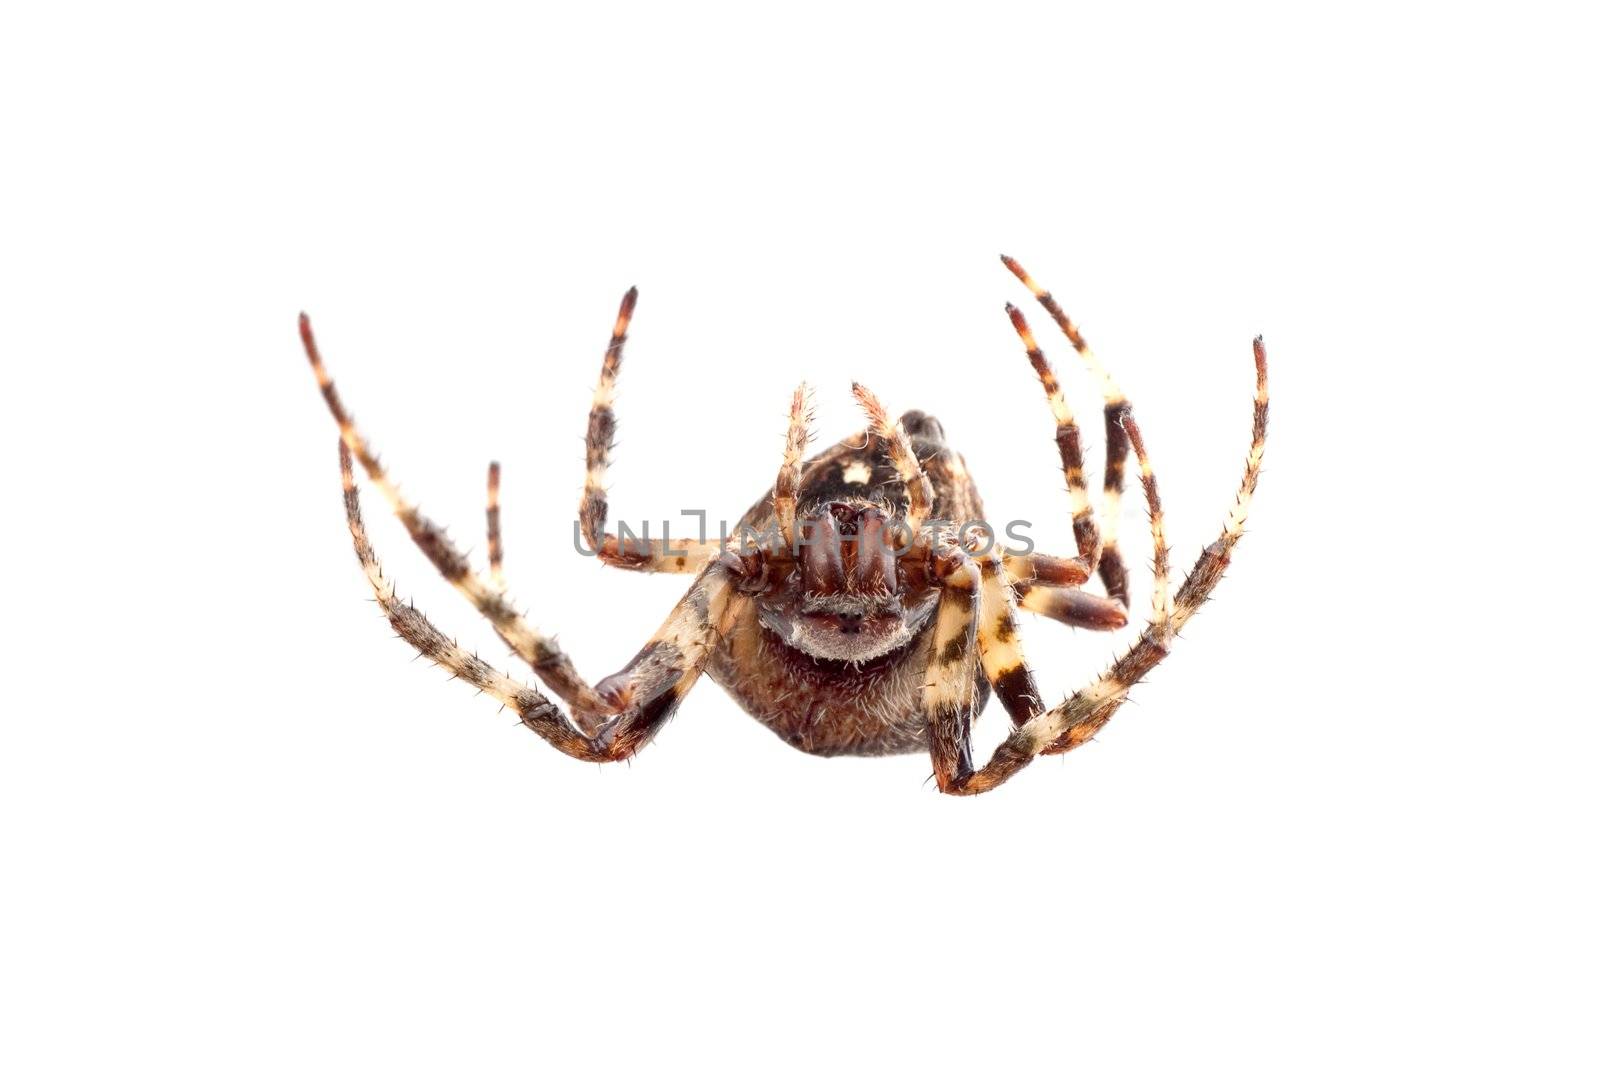 Big brown spider on a whtie background